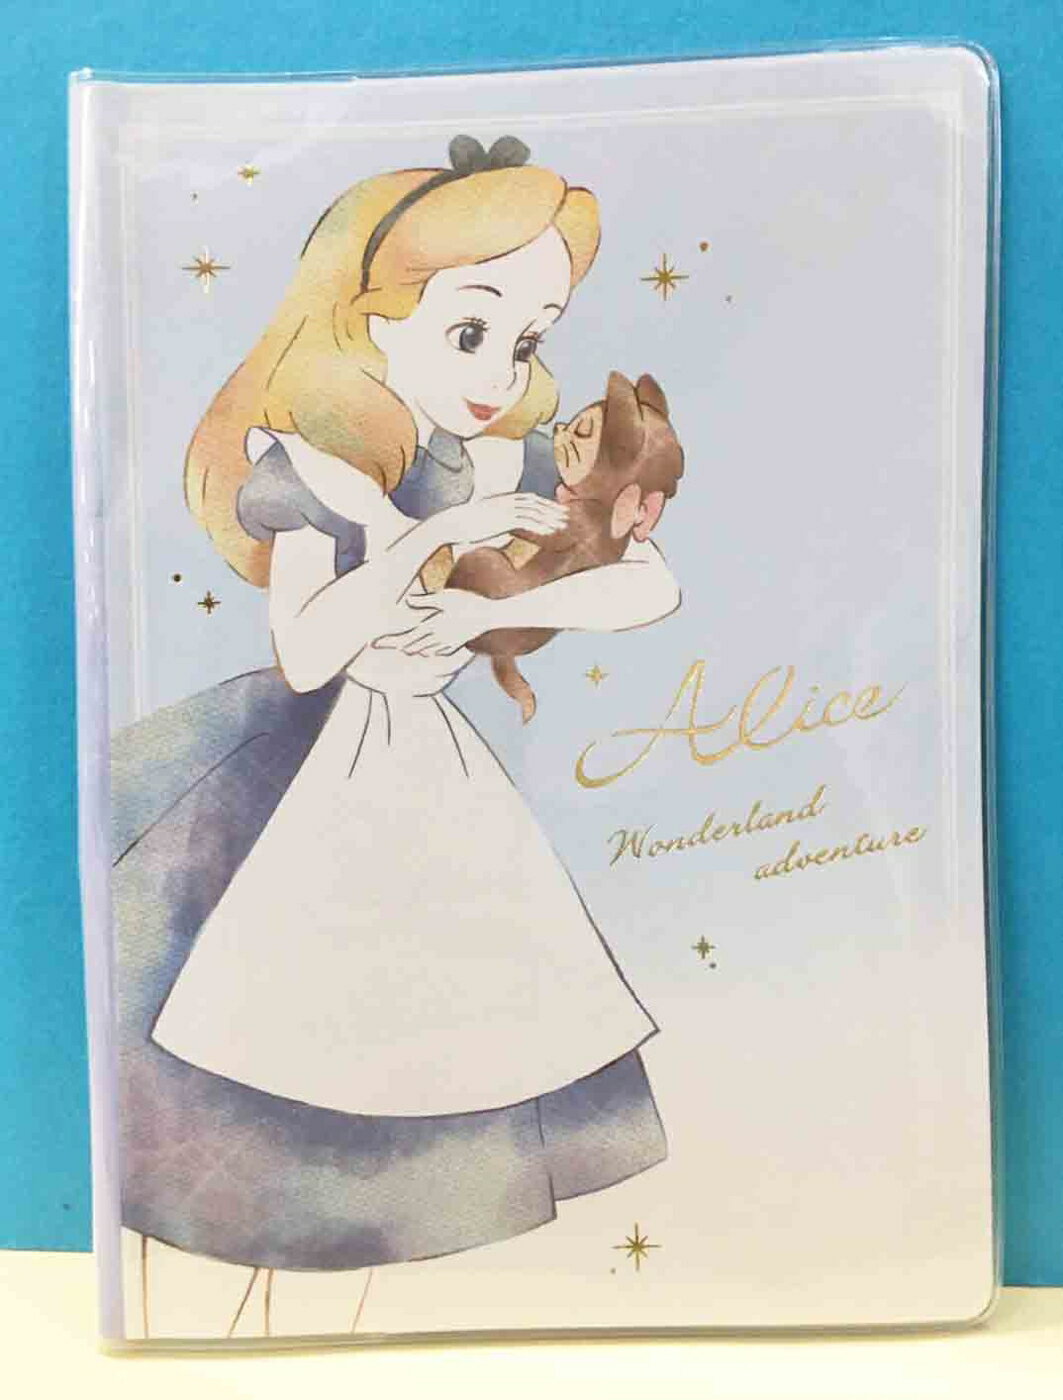 【震撼精品百貨】愛麗絲夢遊仙境 Alice 迪士尼公主系列證件套-愛麗絲 抱貓#49044 震撼日式精品百貨